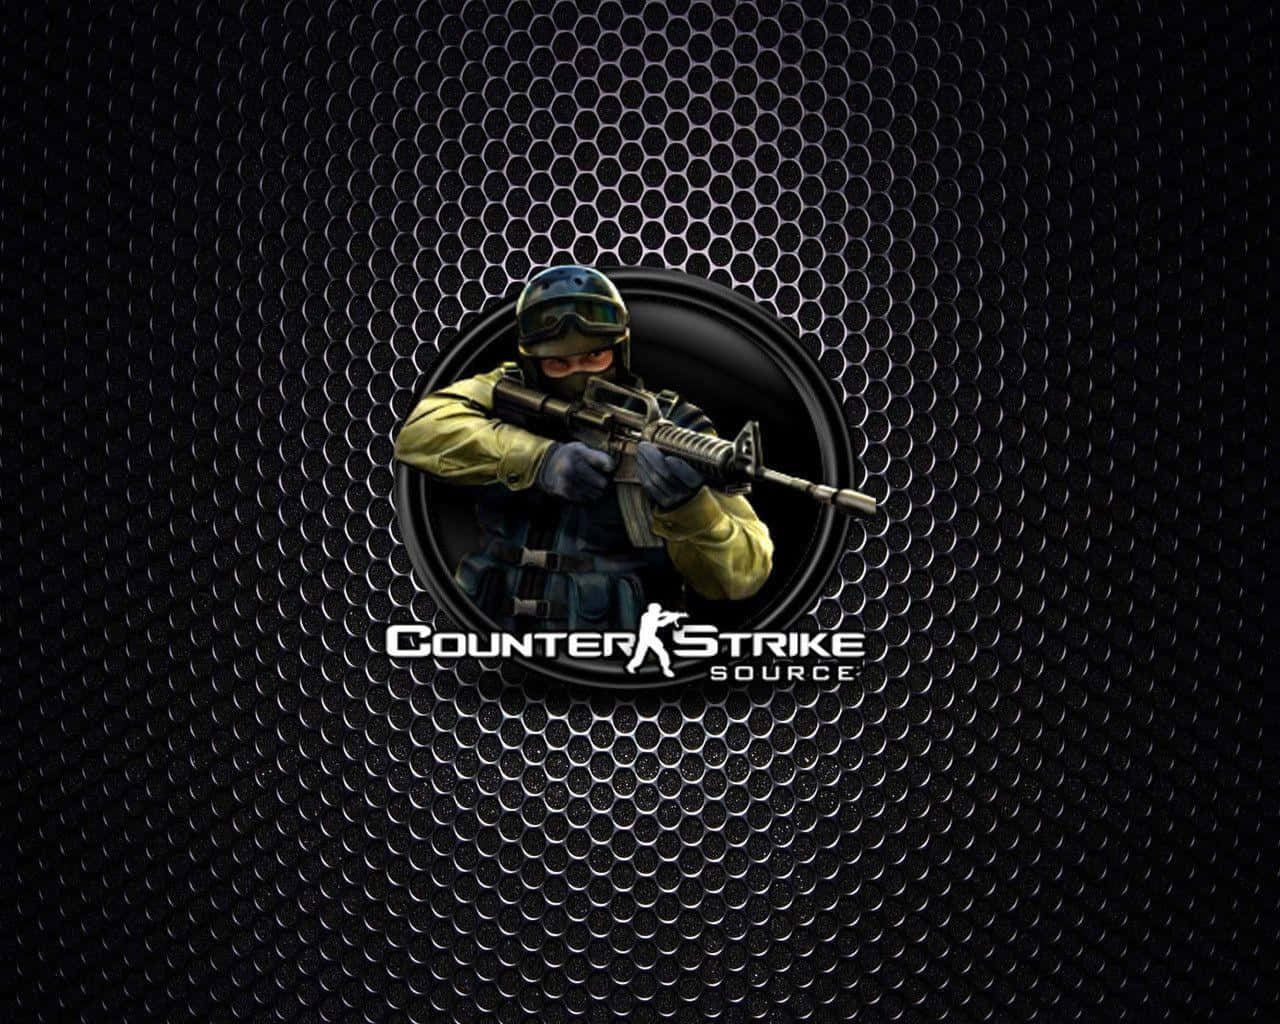 Patrónde Goma De Counter Strike Source. Fondo de pantalla